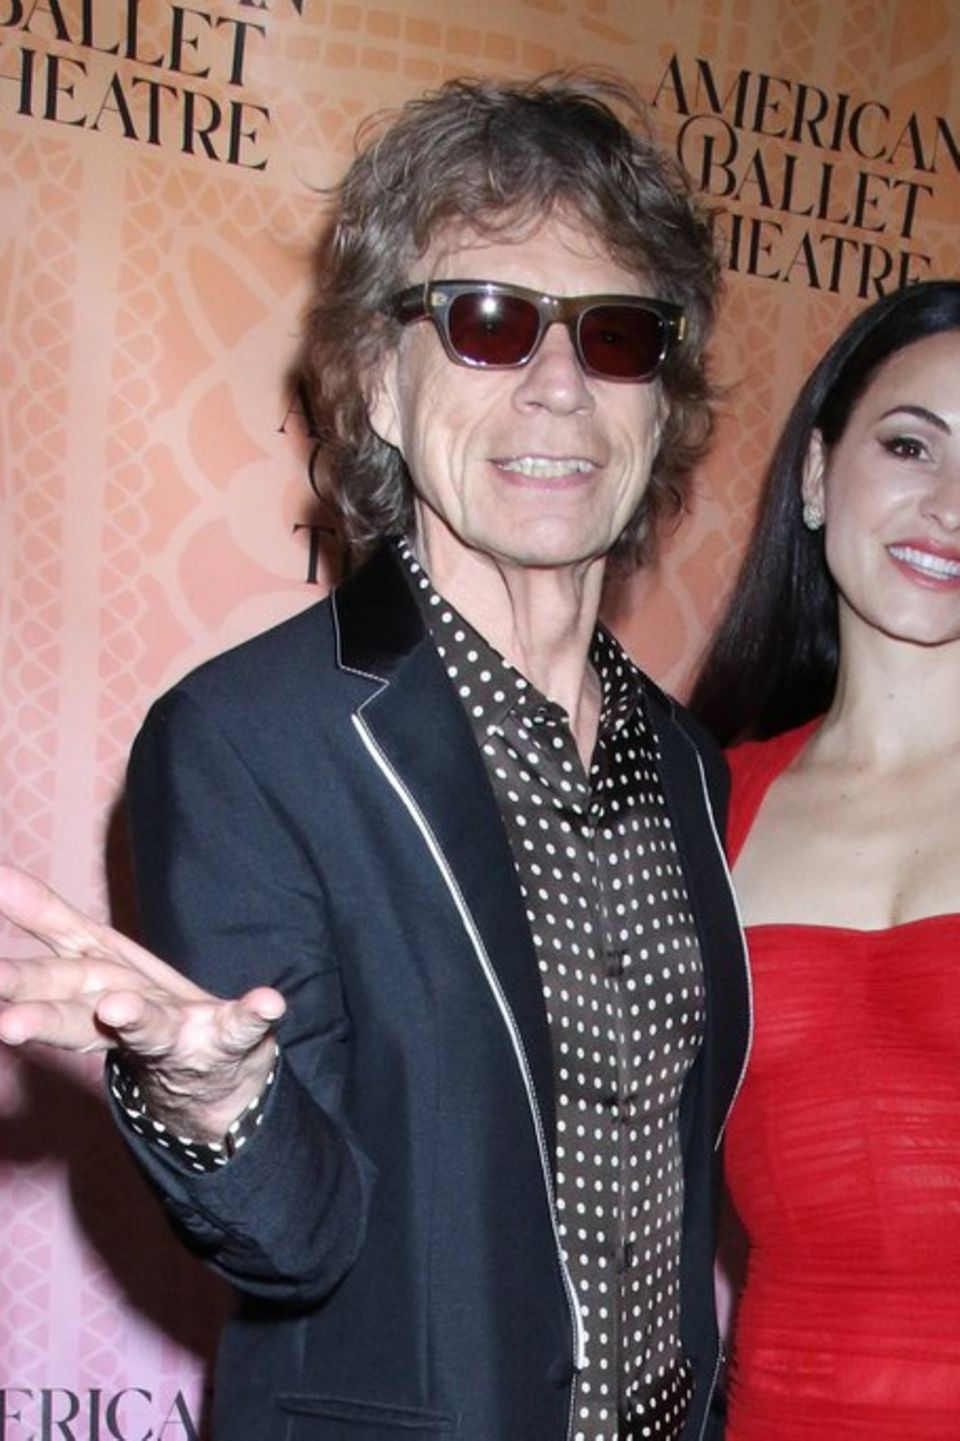 In New York zeigten sich Mick Jagger und Melanie Hamrick am 22. Juni total verliebt. Auf der Veranstaltung soll sie die Verlob